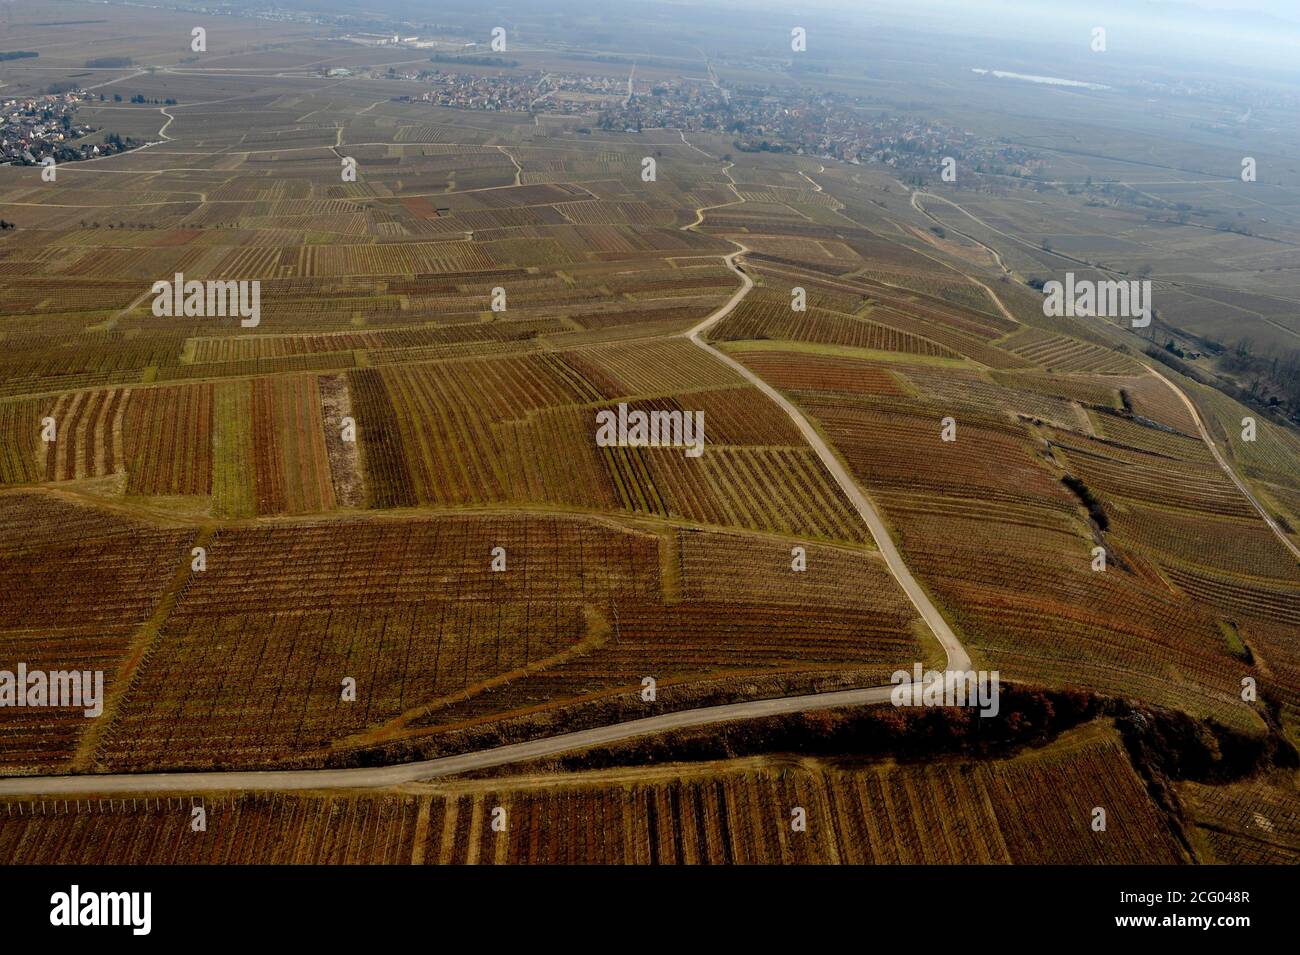 Frankreich, Ain, Abteilung um dela wettolsheim (Luftaufnahme) Stockfoto